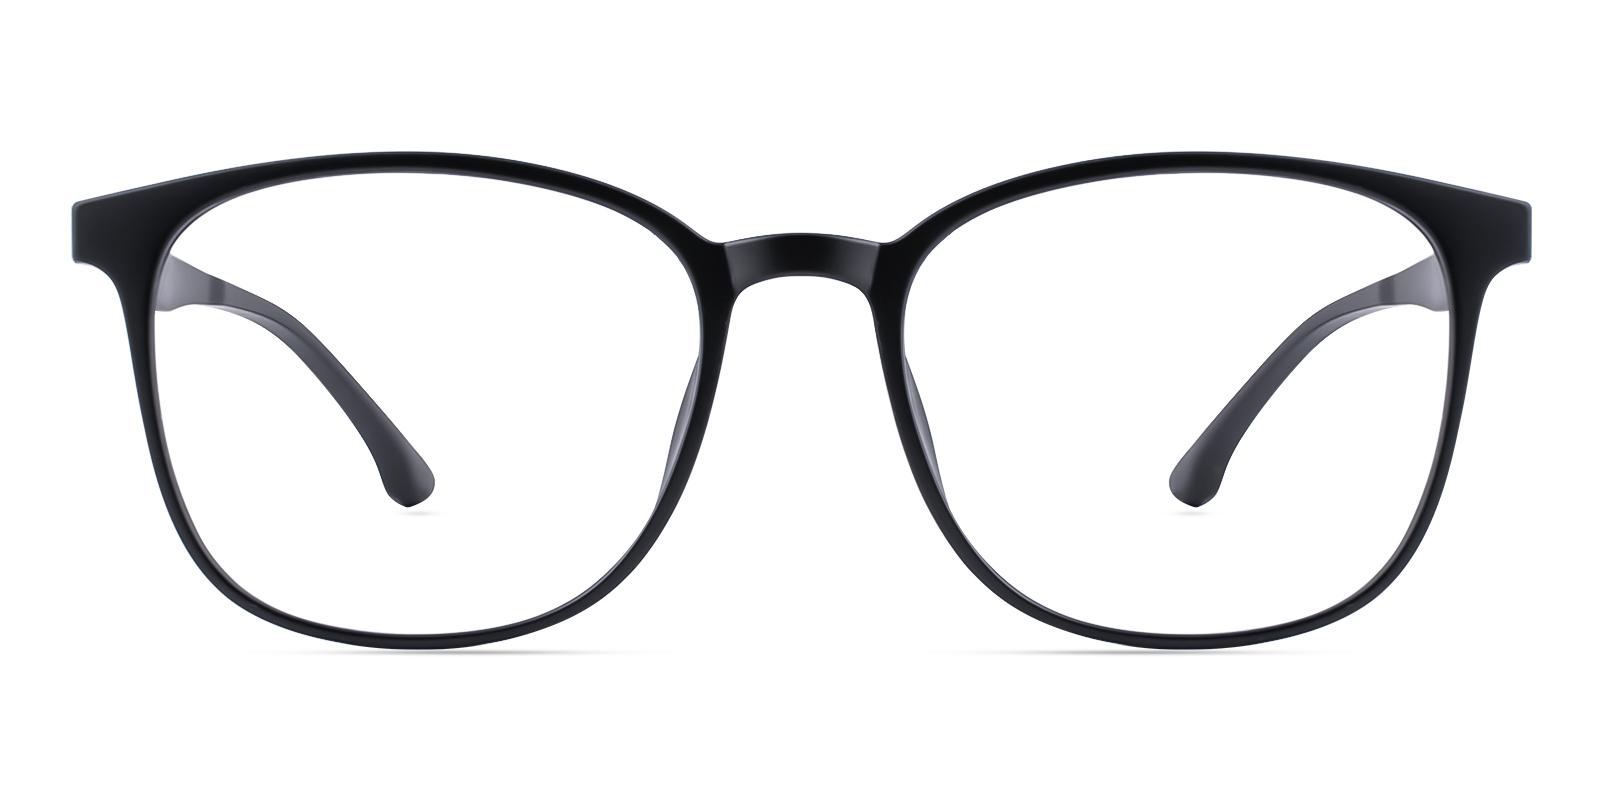 Oram Matte-black Plastic Eyeglasses , UniversalBridgeFit Frames from ABBE Glasses